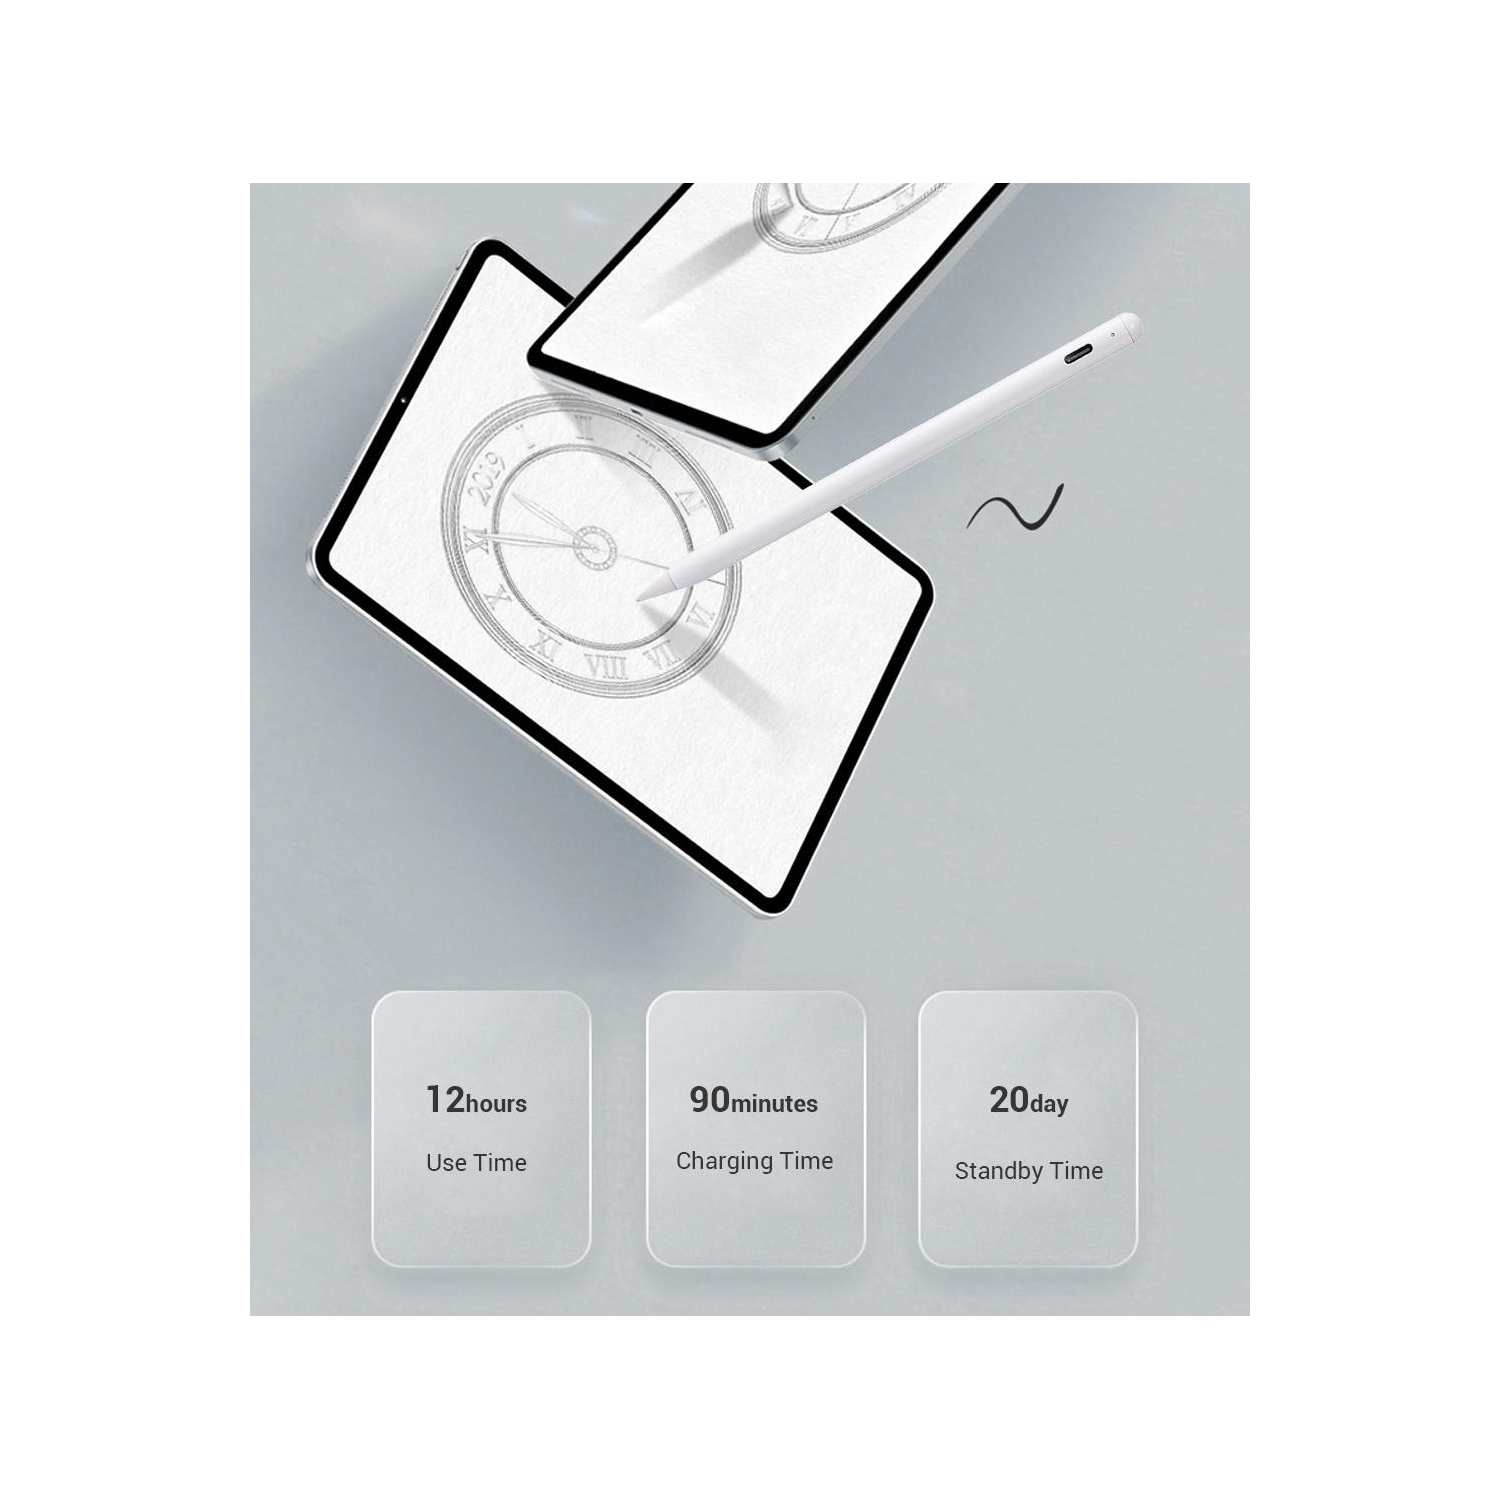 Stylet actif iPad avec rejet de paume pour une écriture et un dessin précis  - PrimeCables®